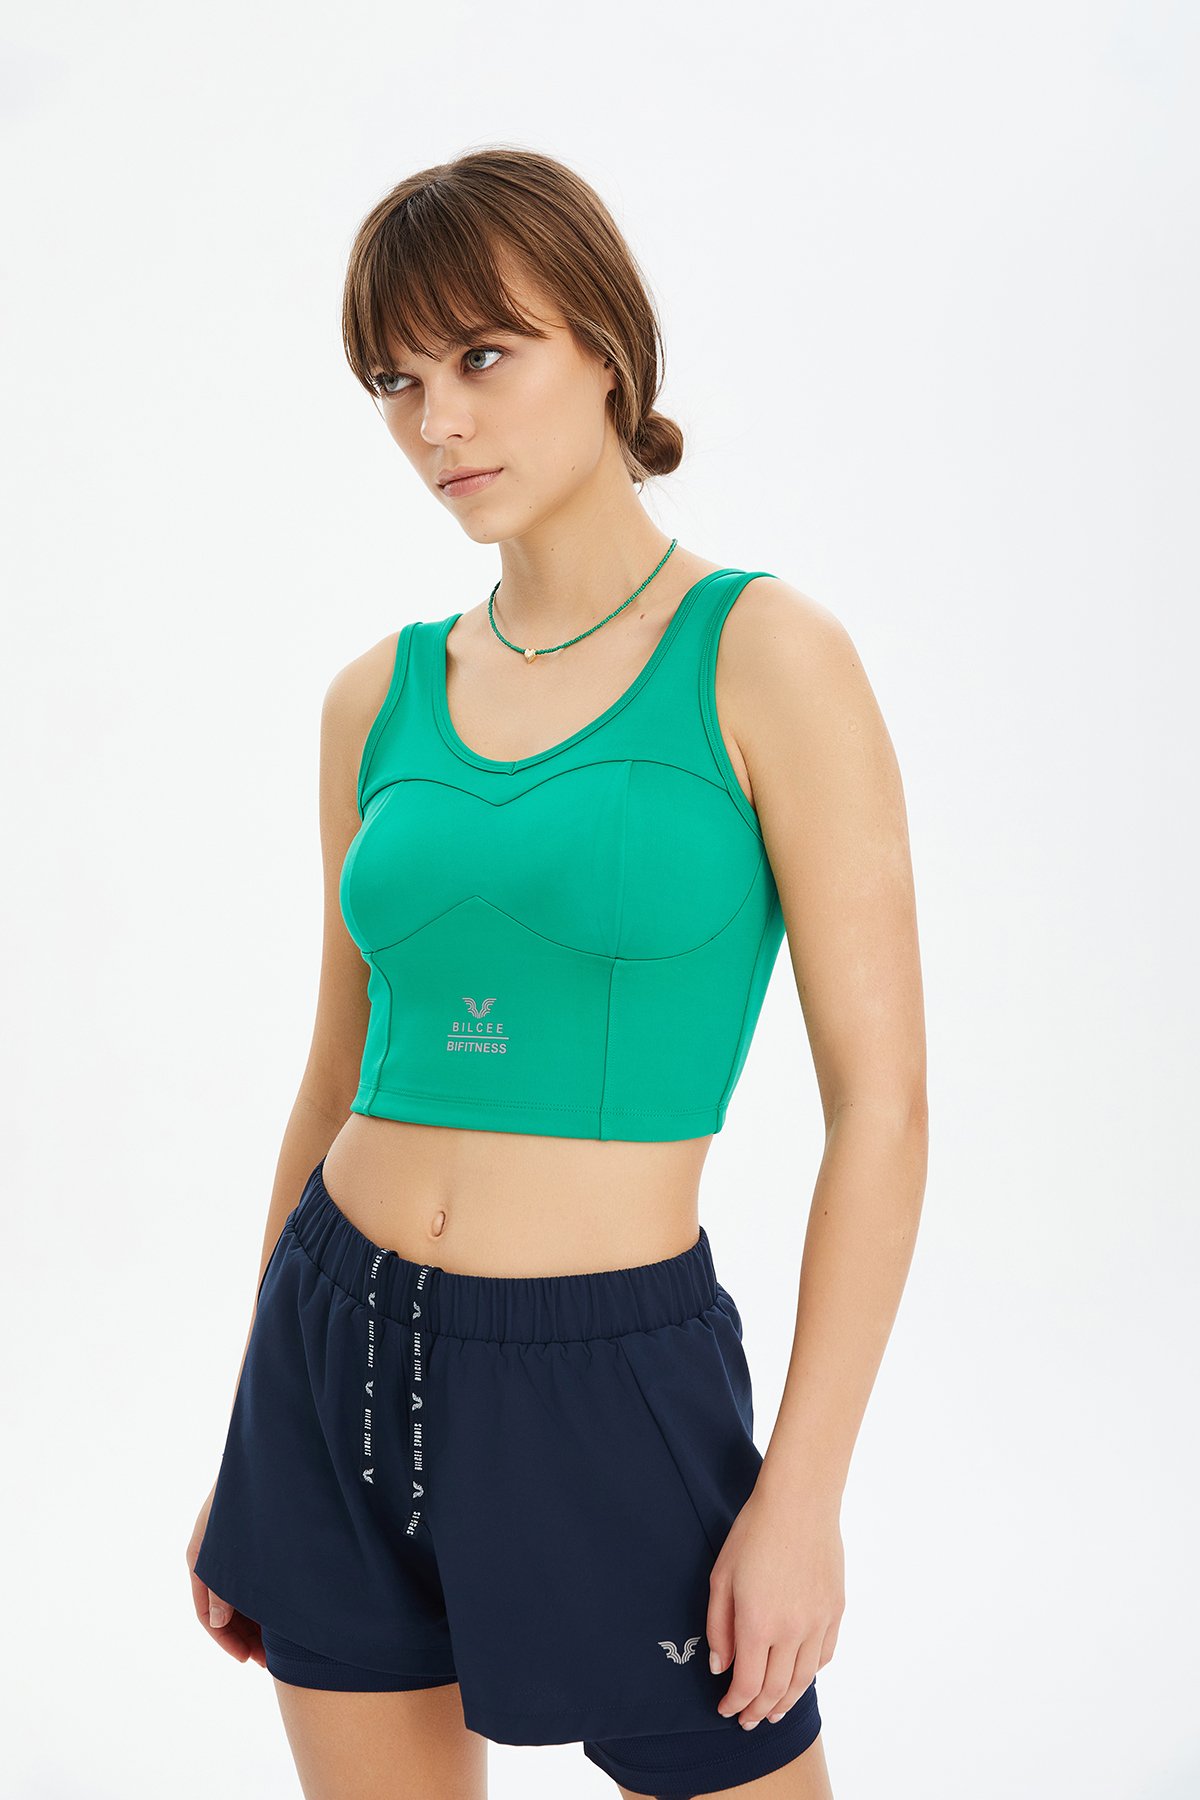 Kadın Yeşil Fitness-Antrenman Spor Fashion Crop Top Toparlayıcı Bra Sporcu Sütyeni Büstiyer 0604 - 10